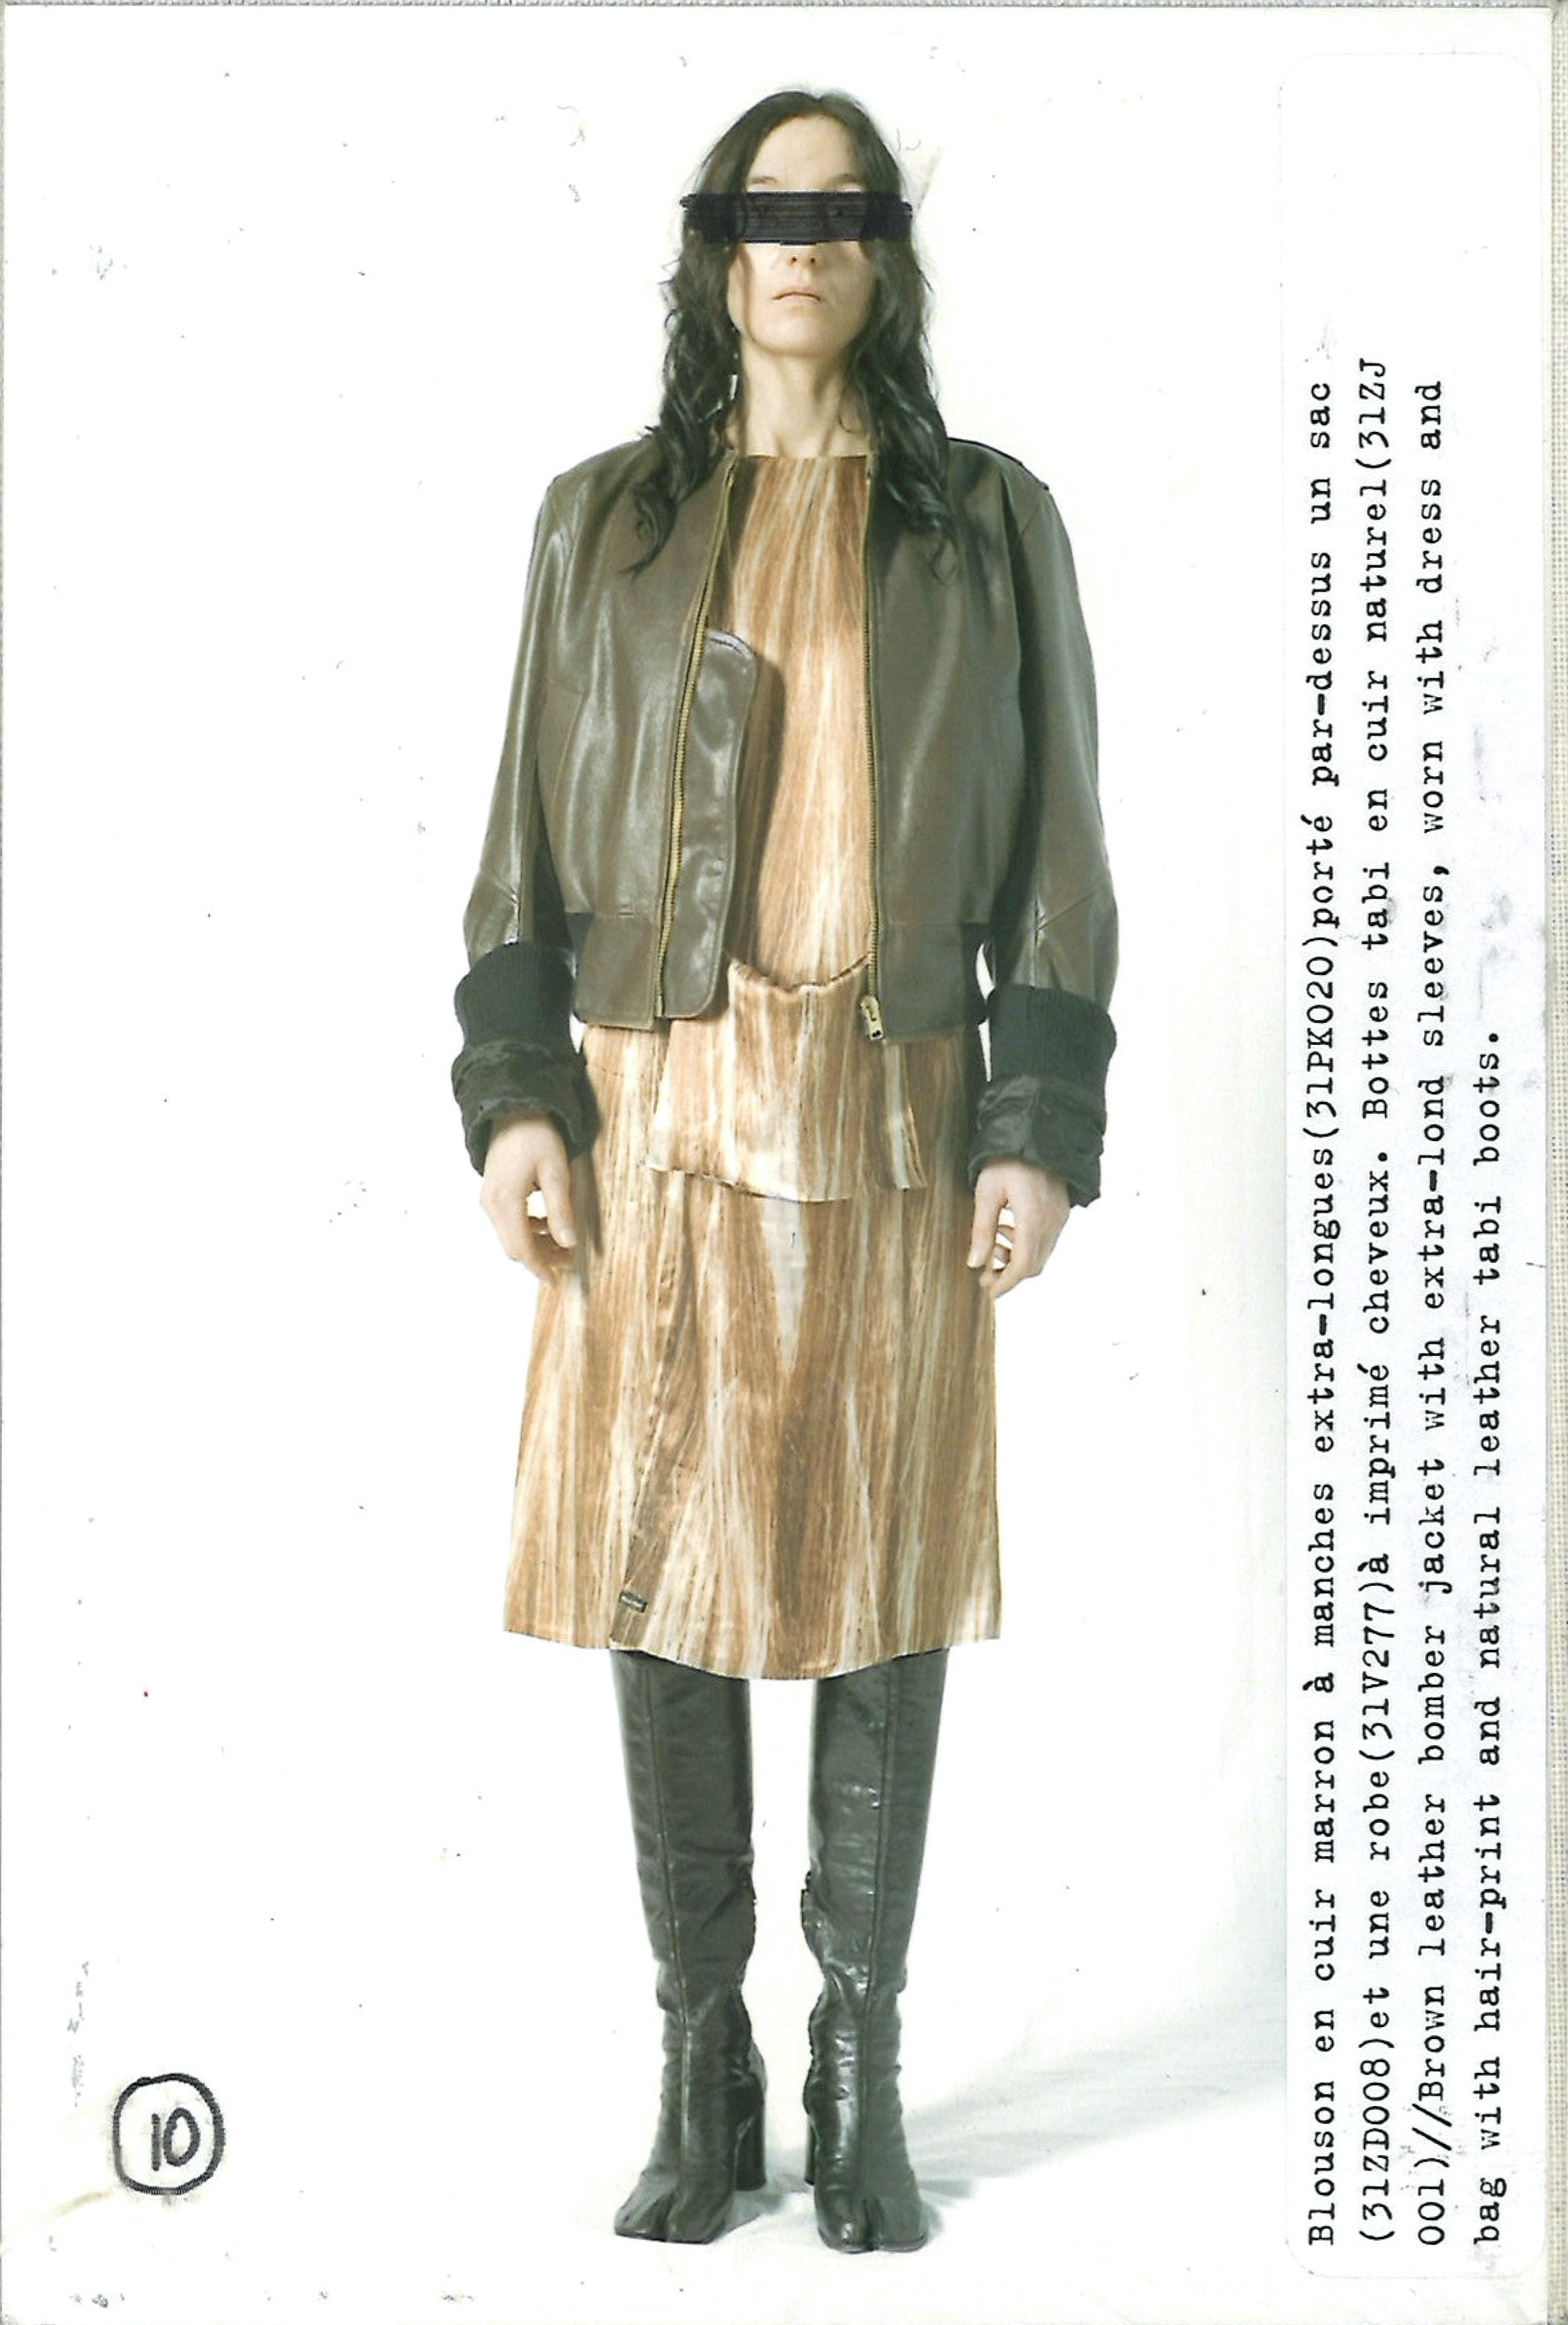 Maison Martin Margiela Lookbook
Womenswear Collection Autumn/Winter 2004-05